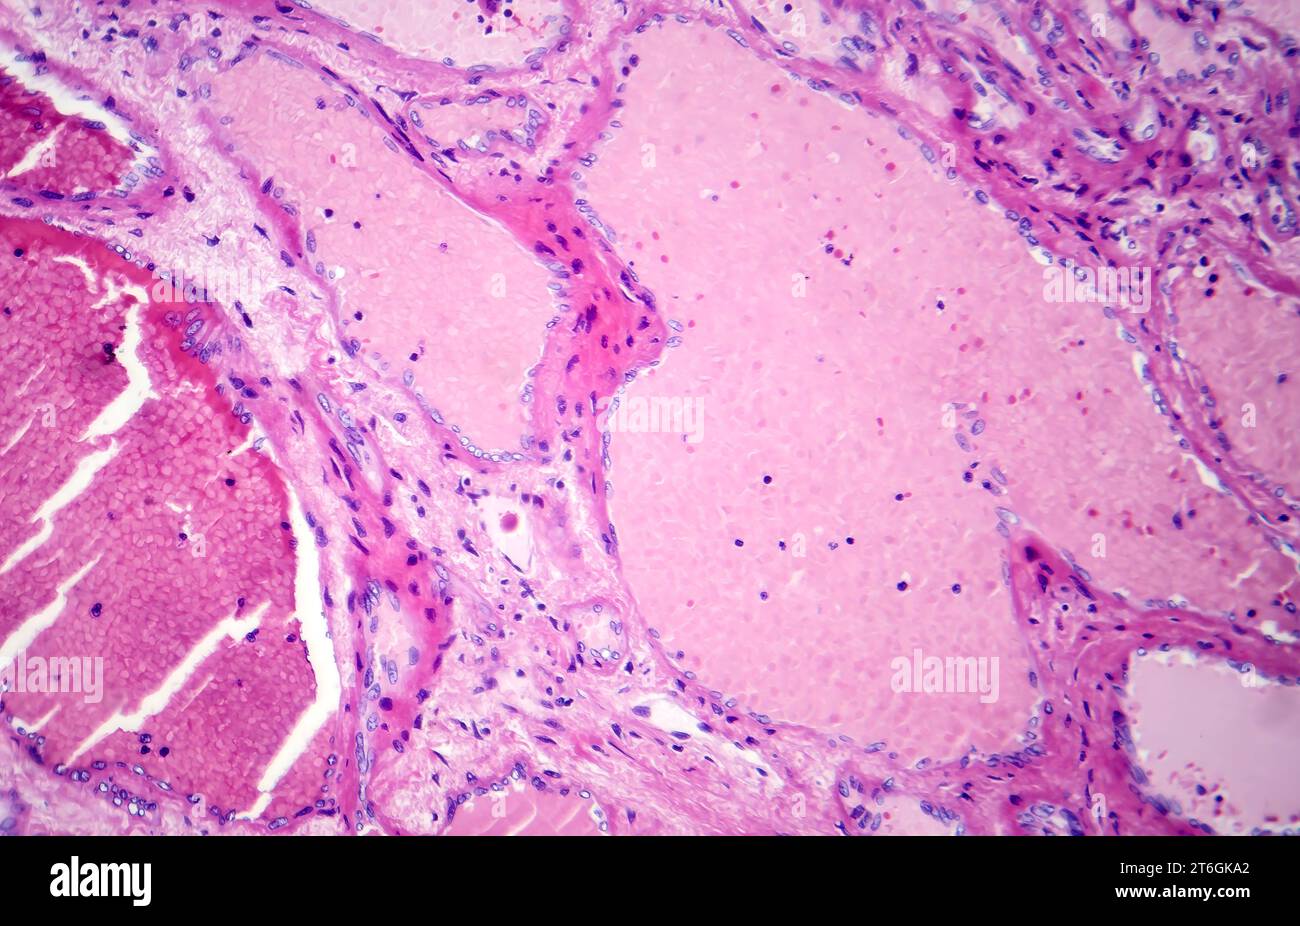 Fotomicrografia di emangioma cavernoso epatico, raffigurante vasi sanguigni dilatati nel tessuto epatico, caratteristica di un tumore benigno. Foto Stock